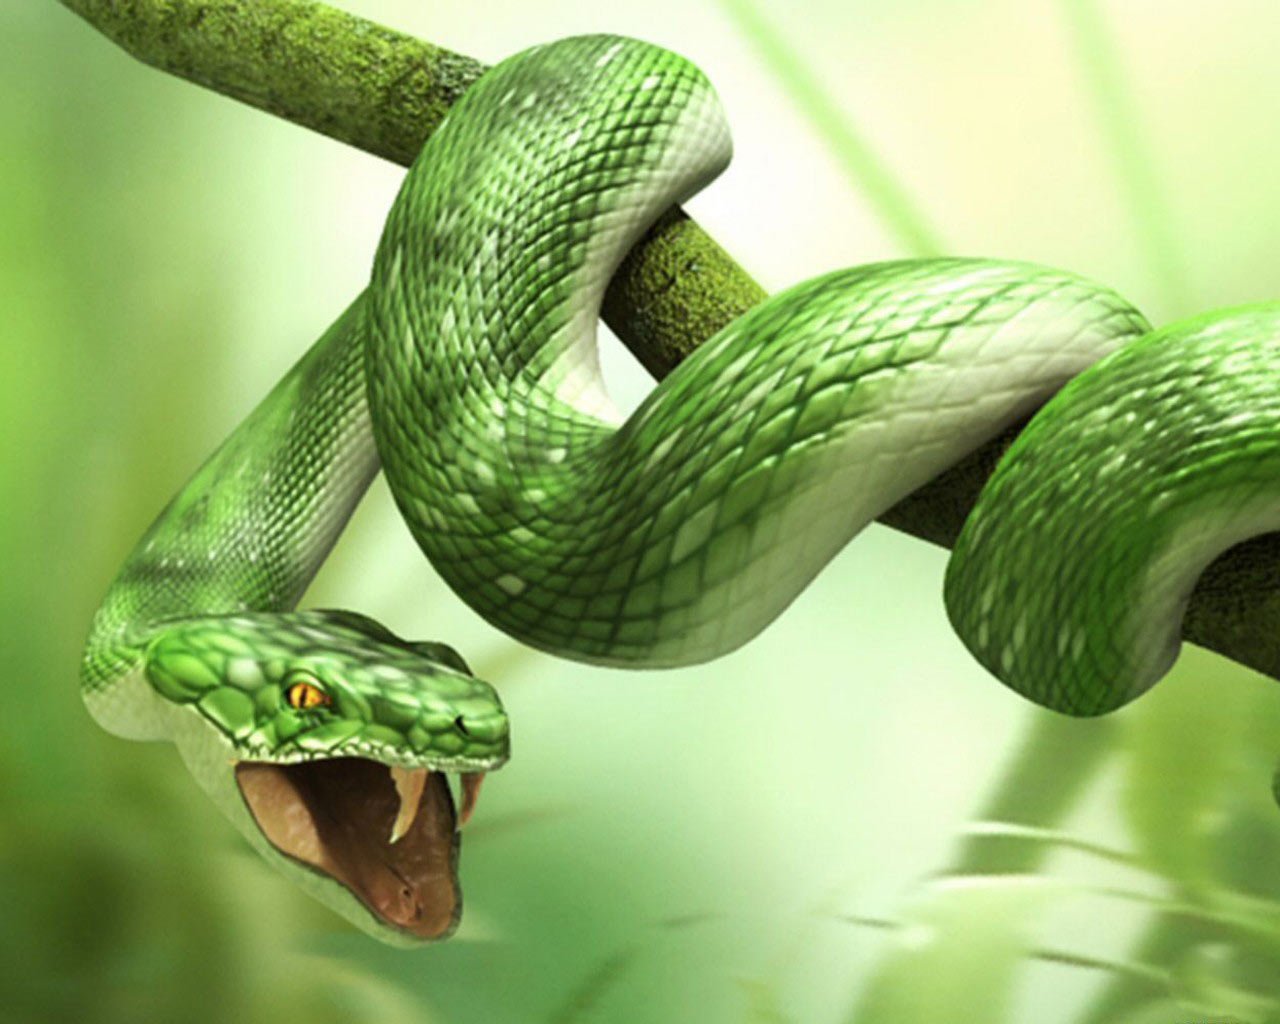 Tổng hợp hình ảnh về loài rắn đẹp nhất - [Kích thước hình ảnh: 1280x1024 px]